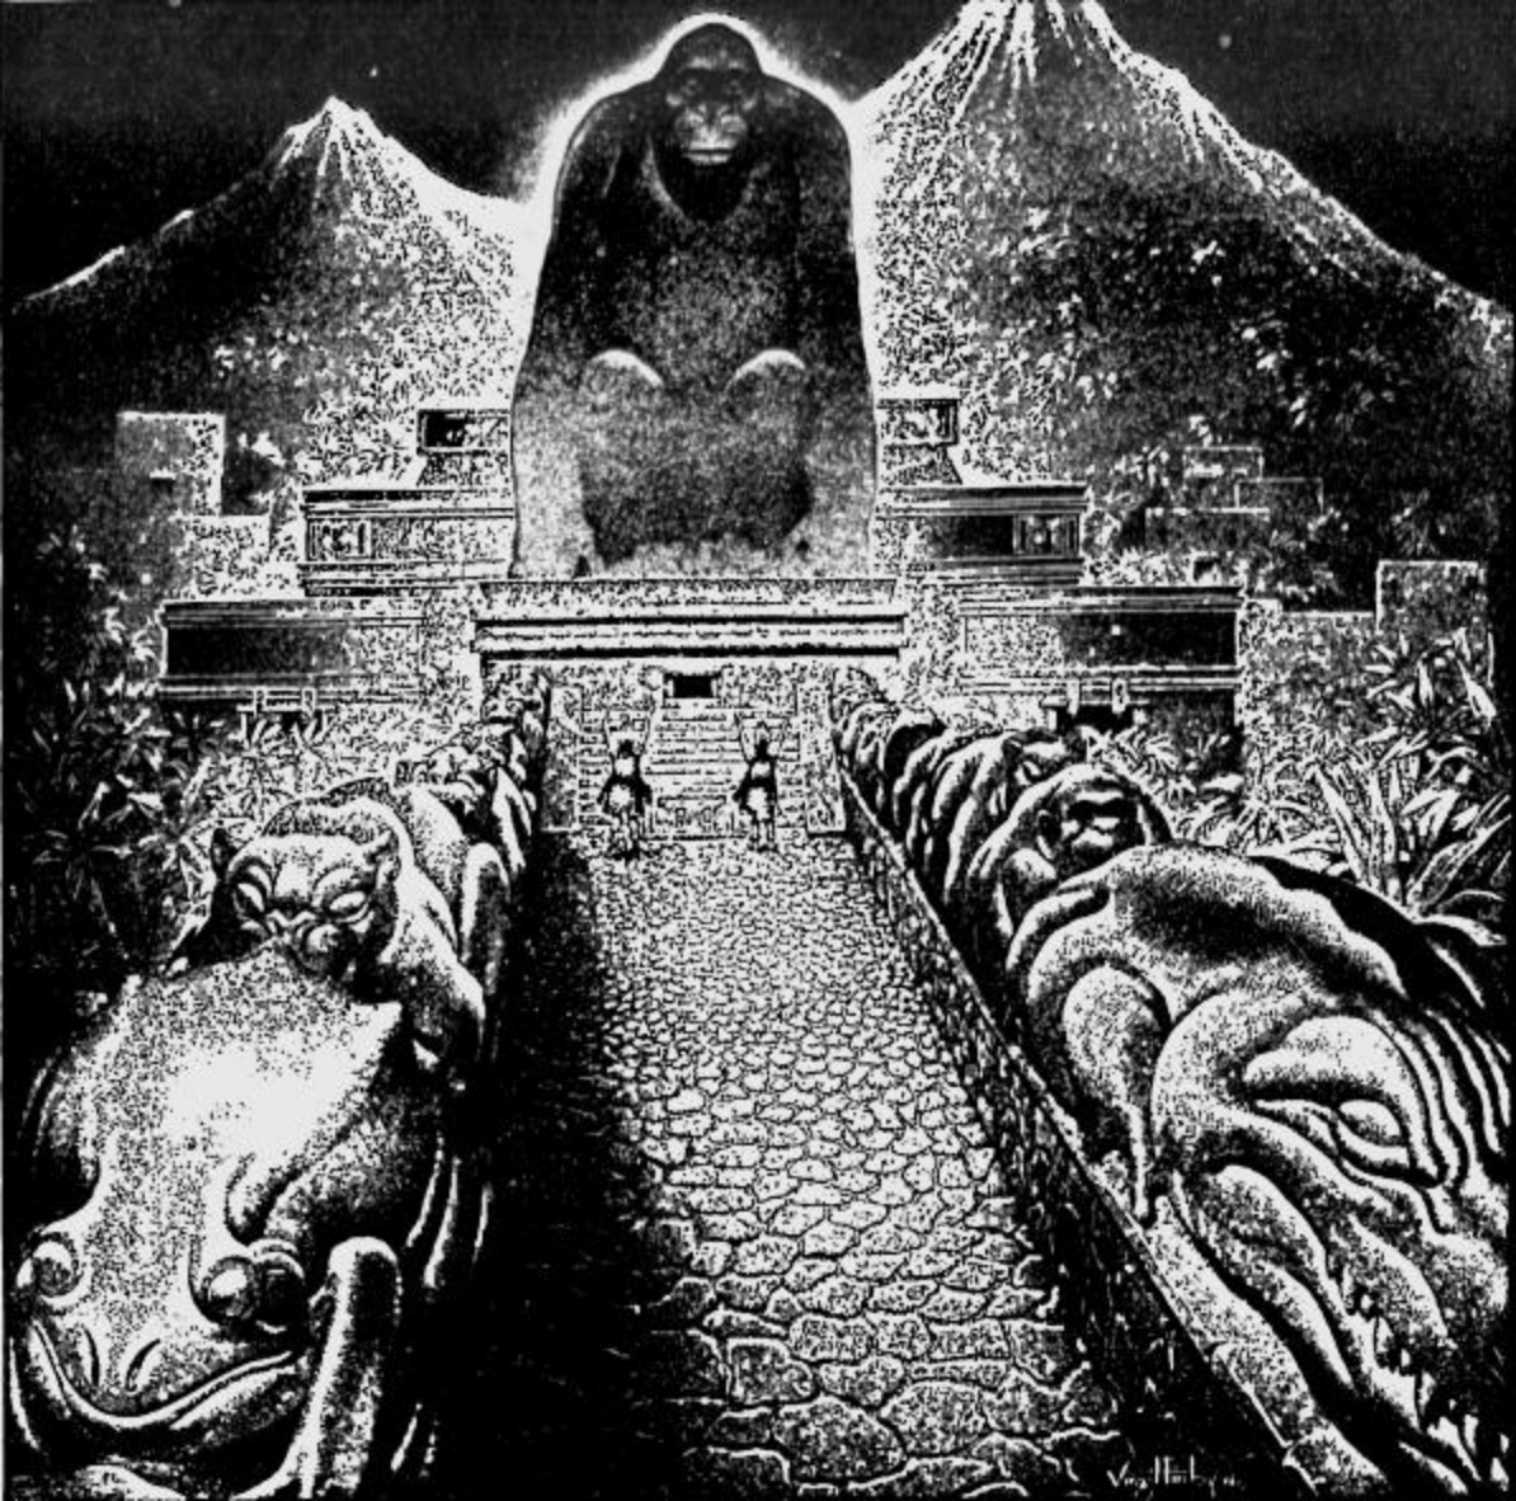 Kunstnik Virgil Finlay ideeline joonistus Theodore Moore'i teosest "Ahvijumala kadunud linn". Algselt avaldati ajakirjas The American Weekly, 22. september 1940